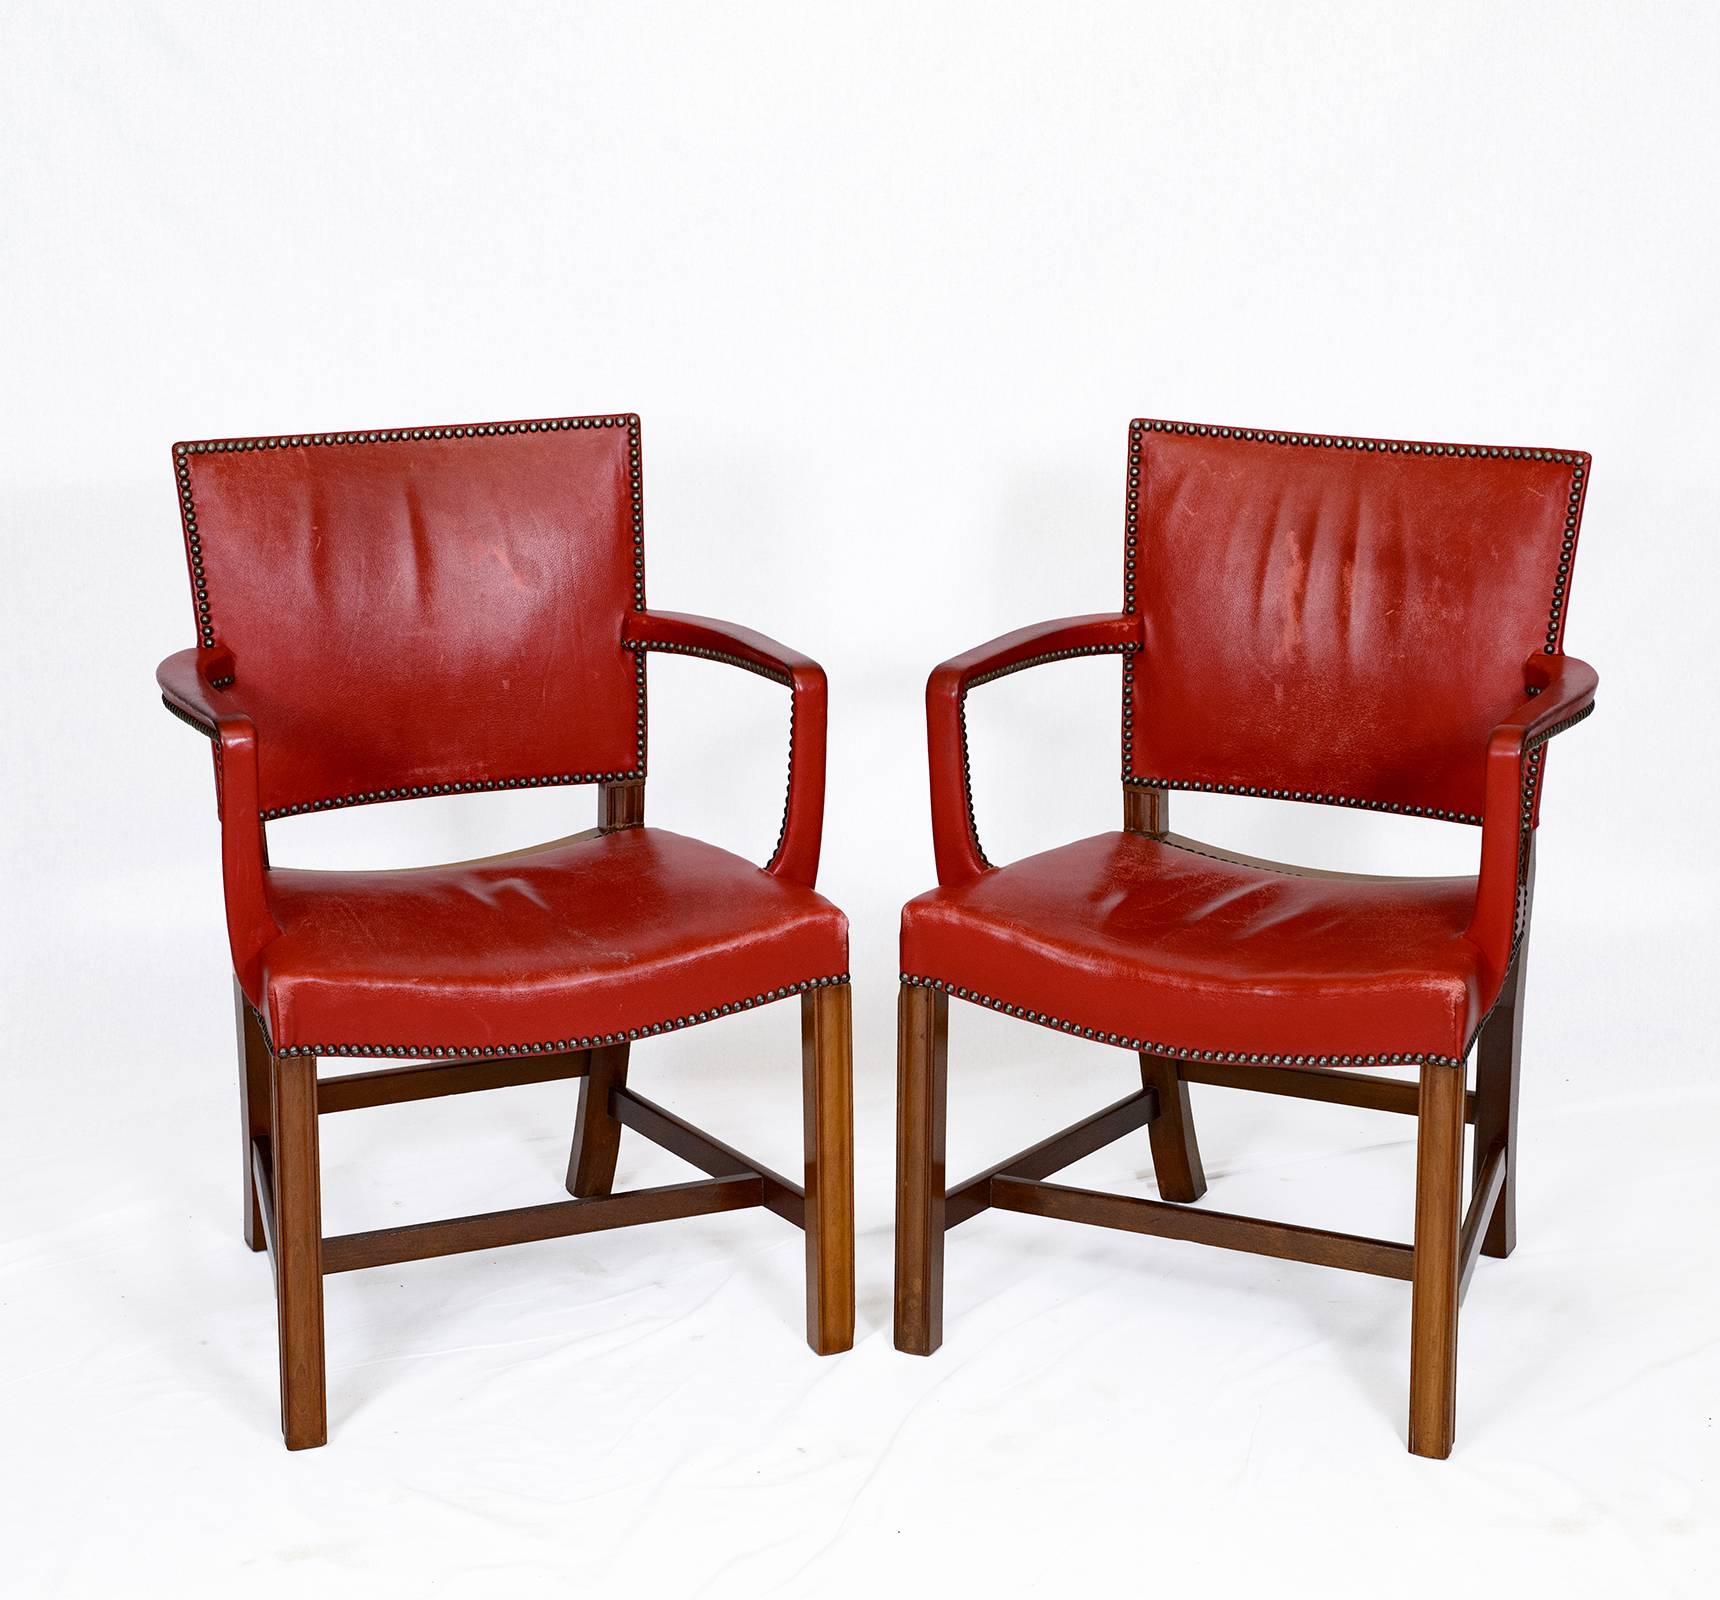 Ein Paar Kaare Klint-Sessel, entworfen 1927 und hergestellt von Rud Rasmussen.    Geschäft früher bekannt als ARTFUL DODGER INC